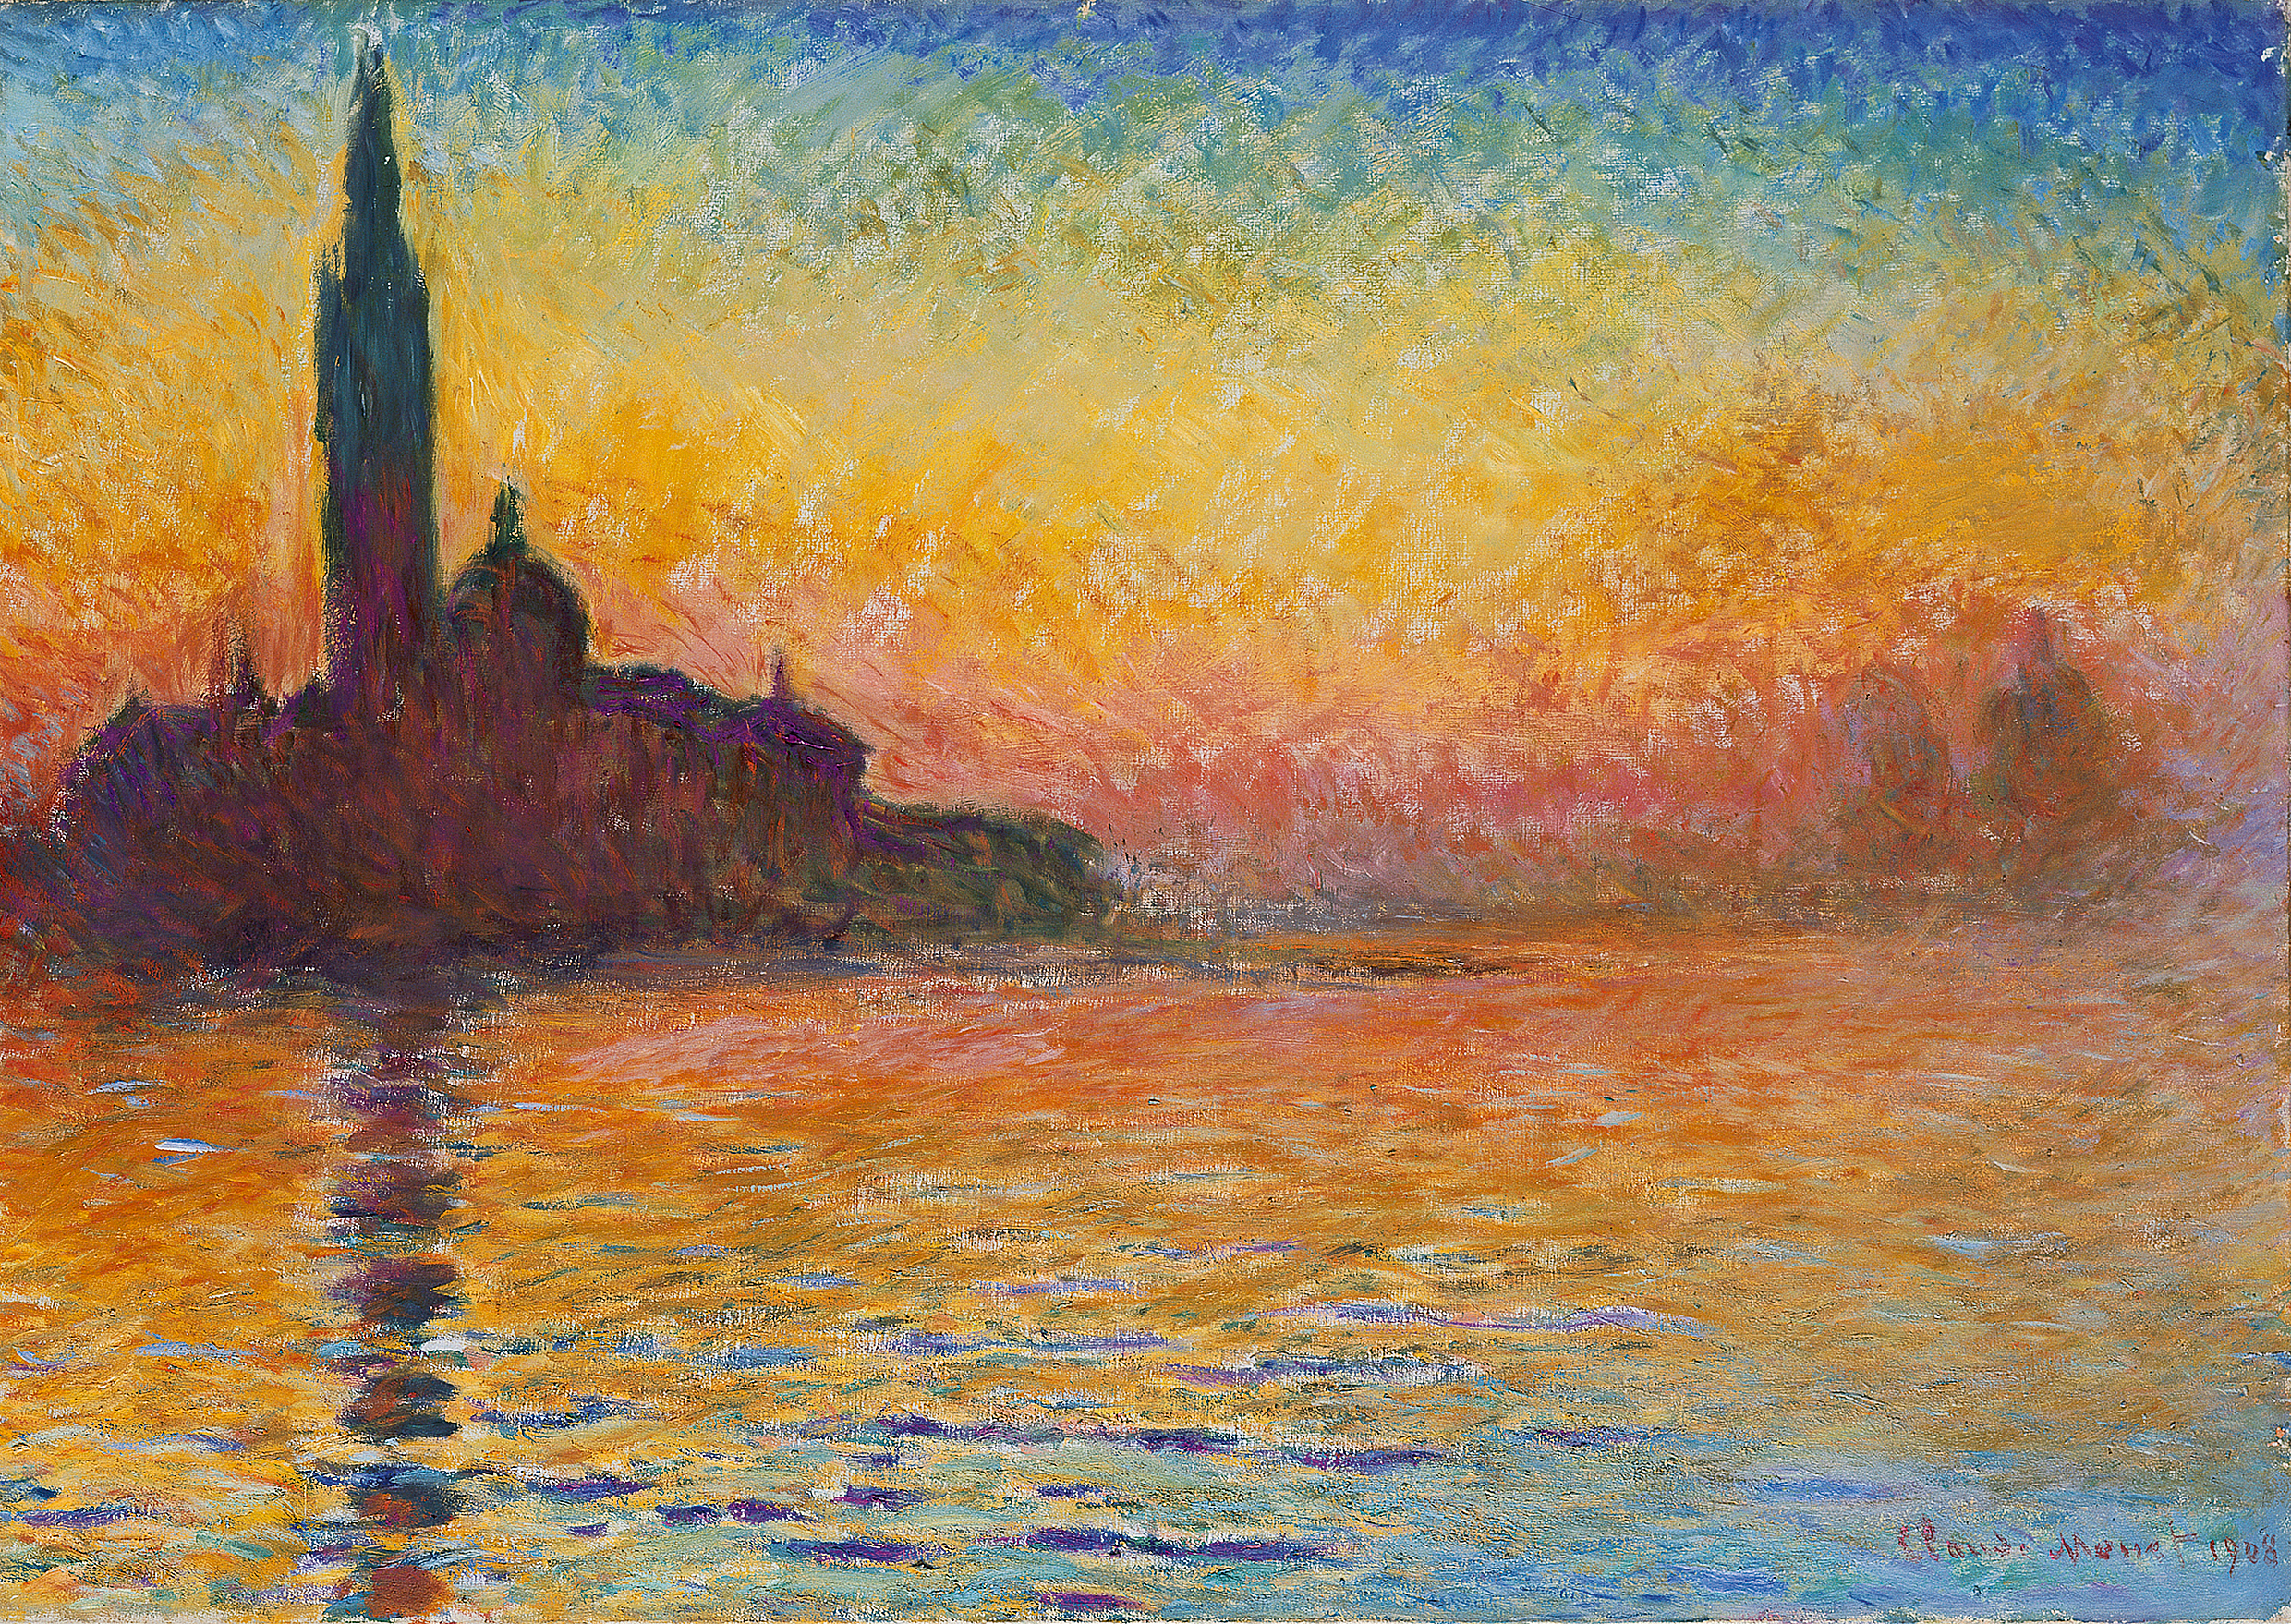 サン・ジョルジョ・マッジョーレ、黄昏 by Claude Monet - 1908 - 65.2 x 92.4 cm 